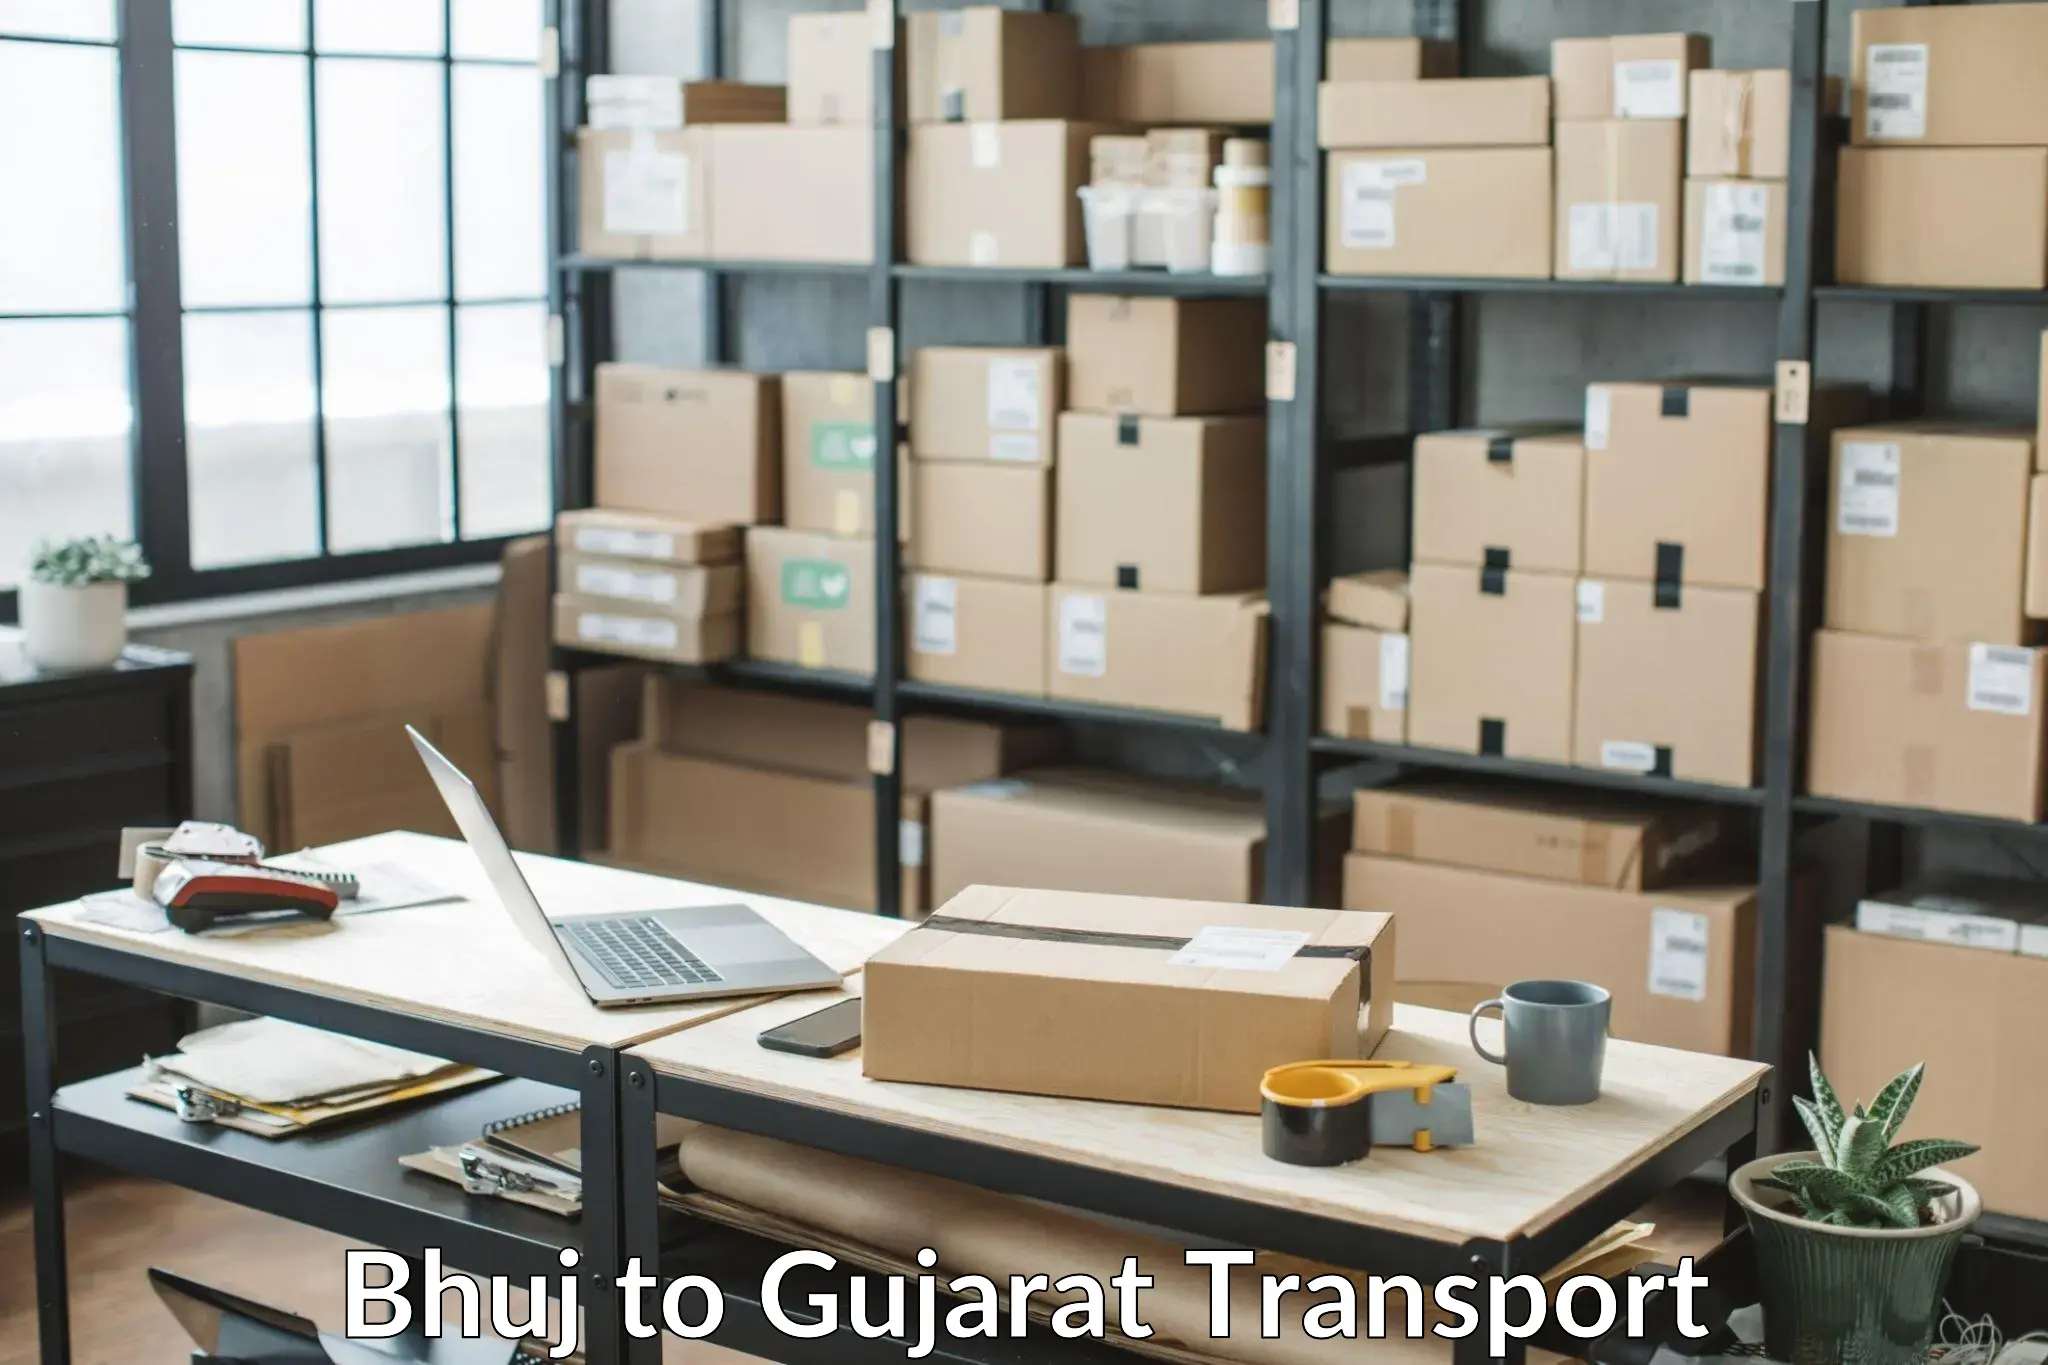 Commercial transport service Bhuj to IIIT Vadodara